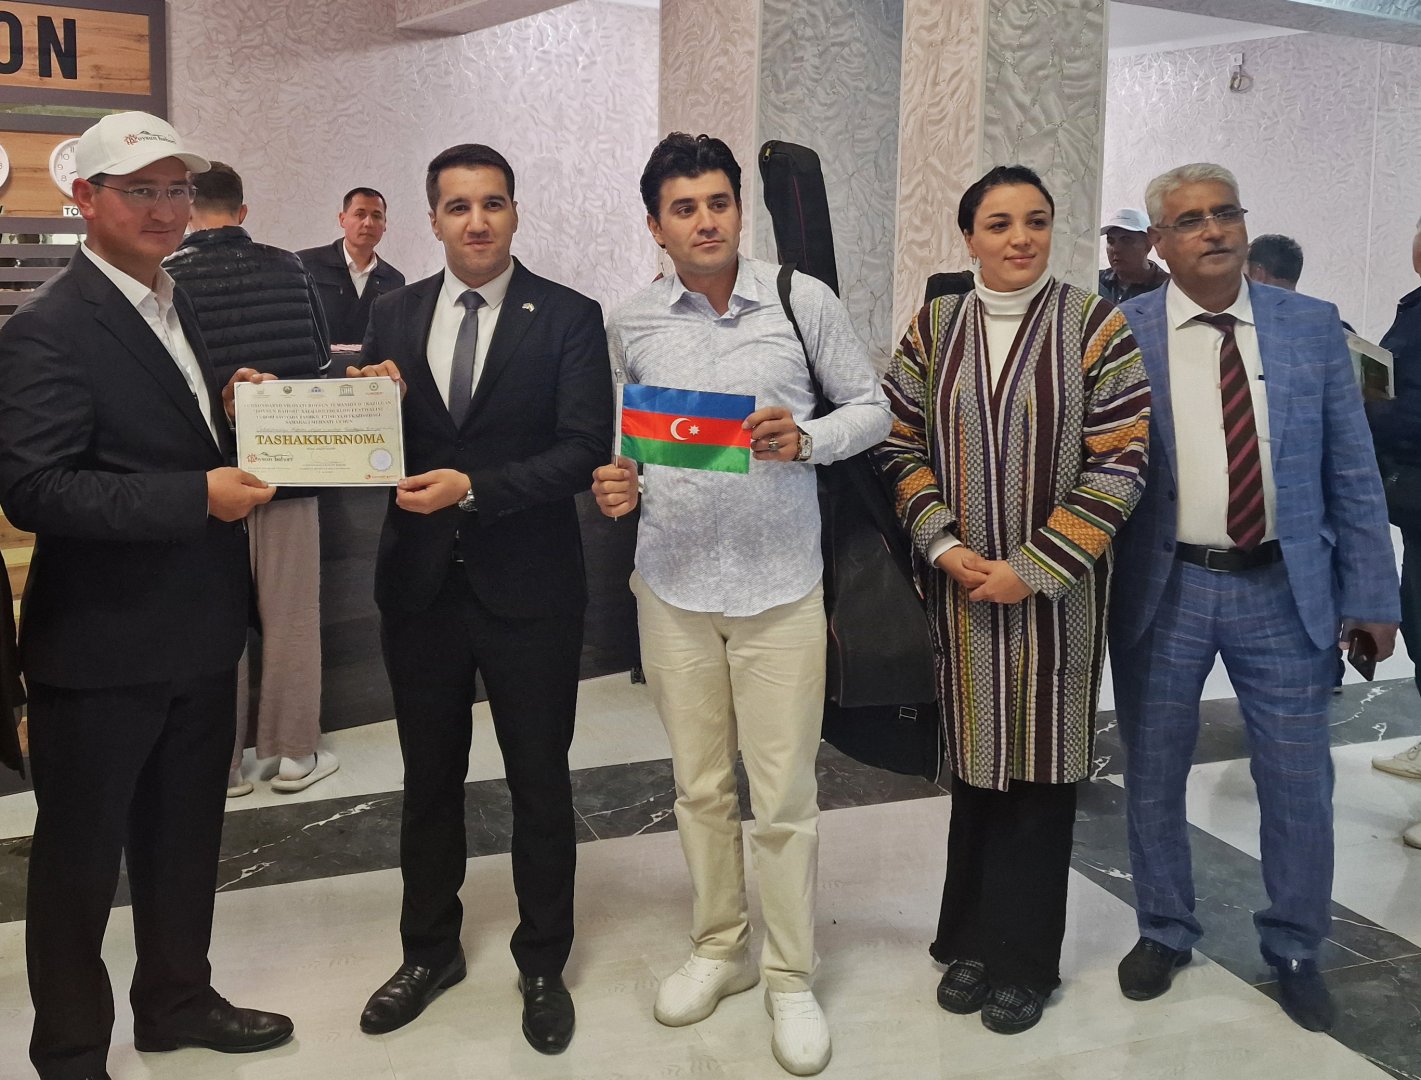 Азербайджан представлен на Международном фольклорном фестивале “Бойсун бахори” в Узбекистане (ФОТО)